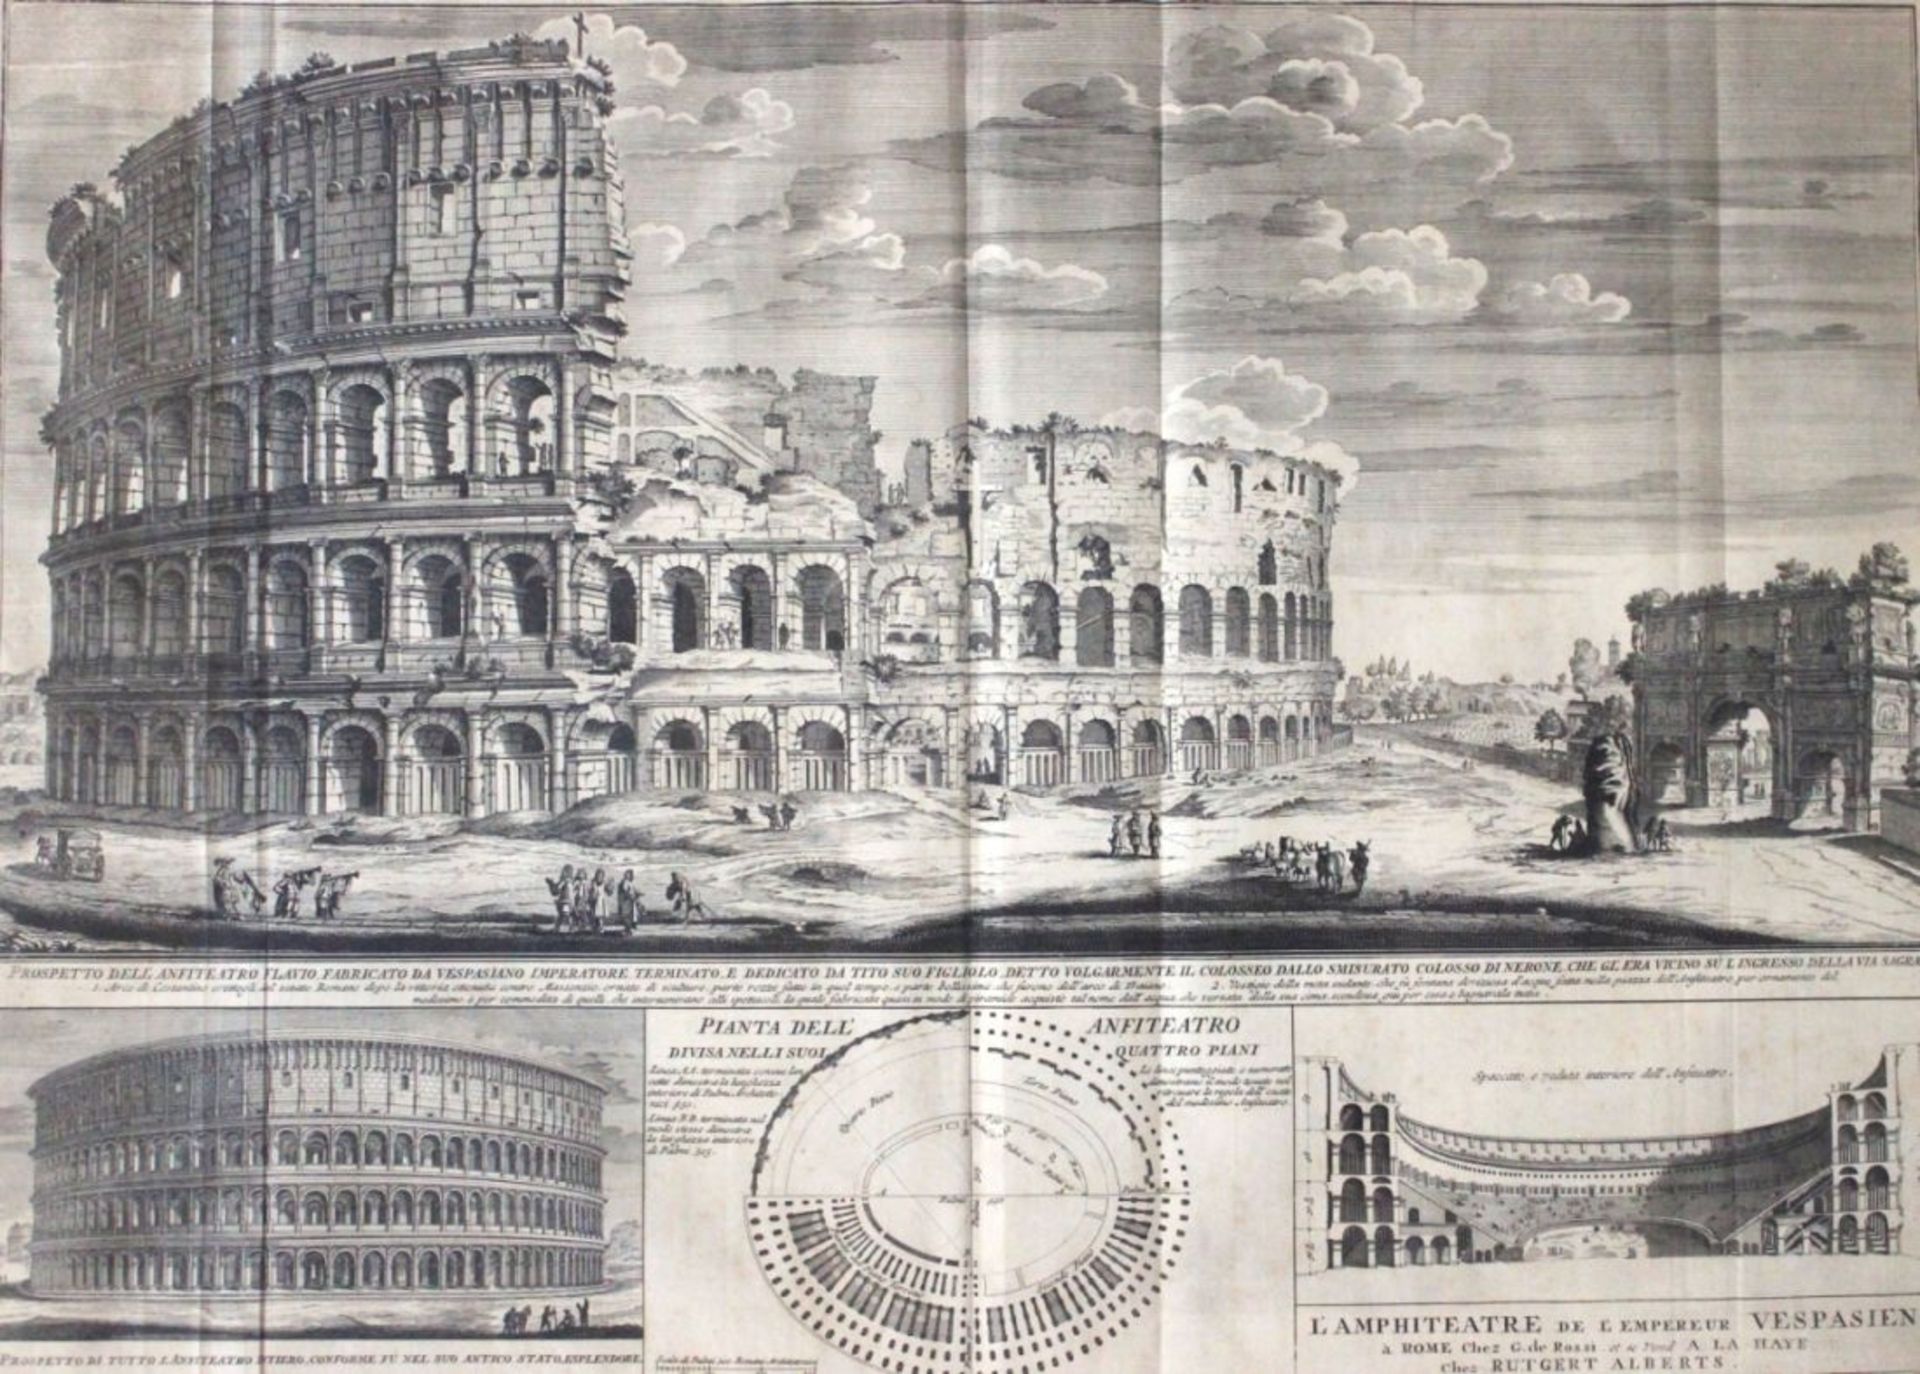 Kupferstich - Girolamo Rossi (1680 Italien) Colosseum. "L'Amphiteatre de L'Empereur Vespasien",